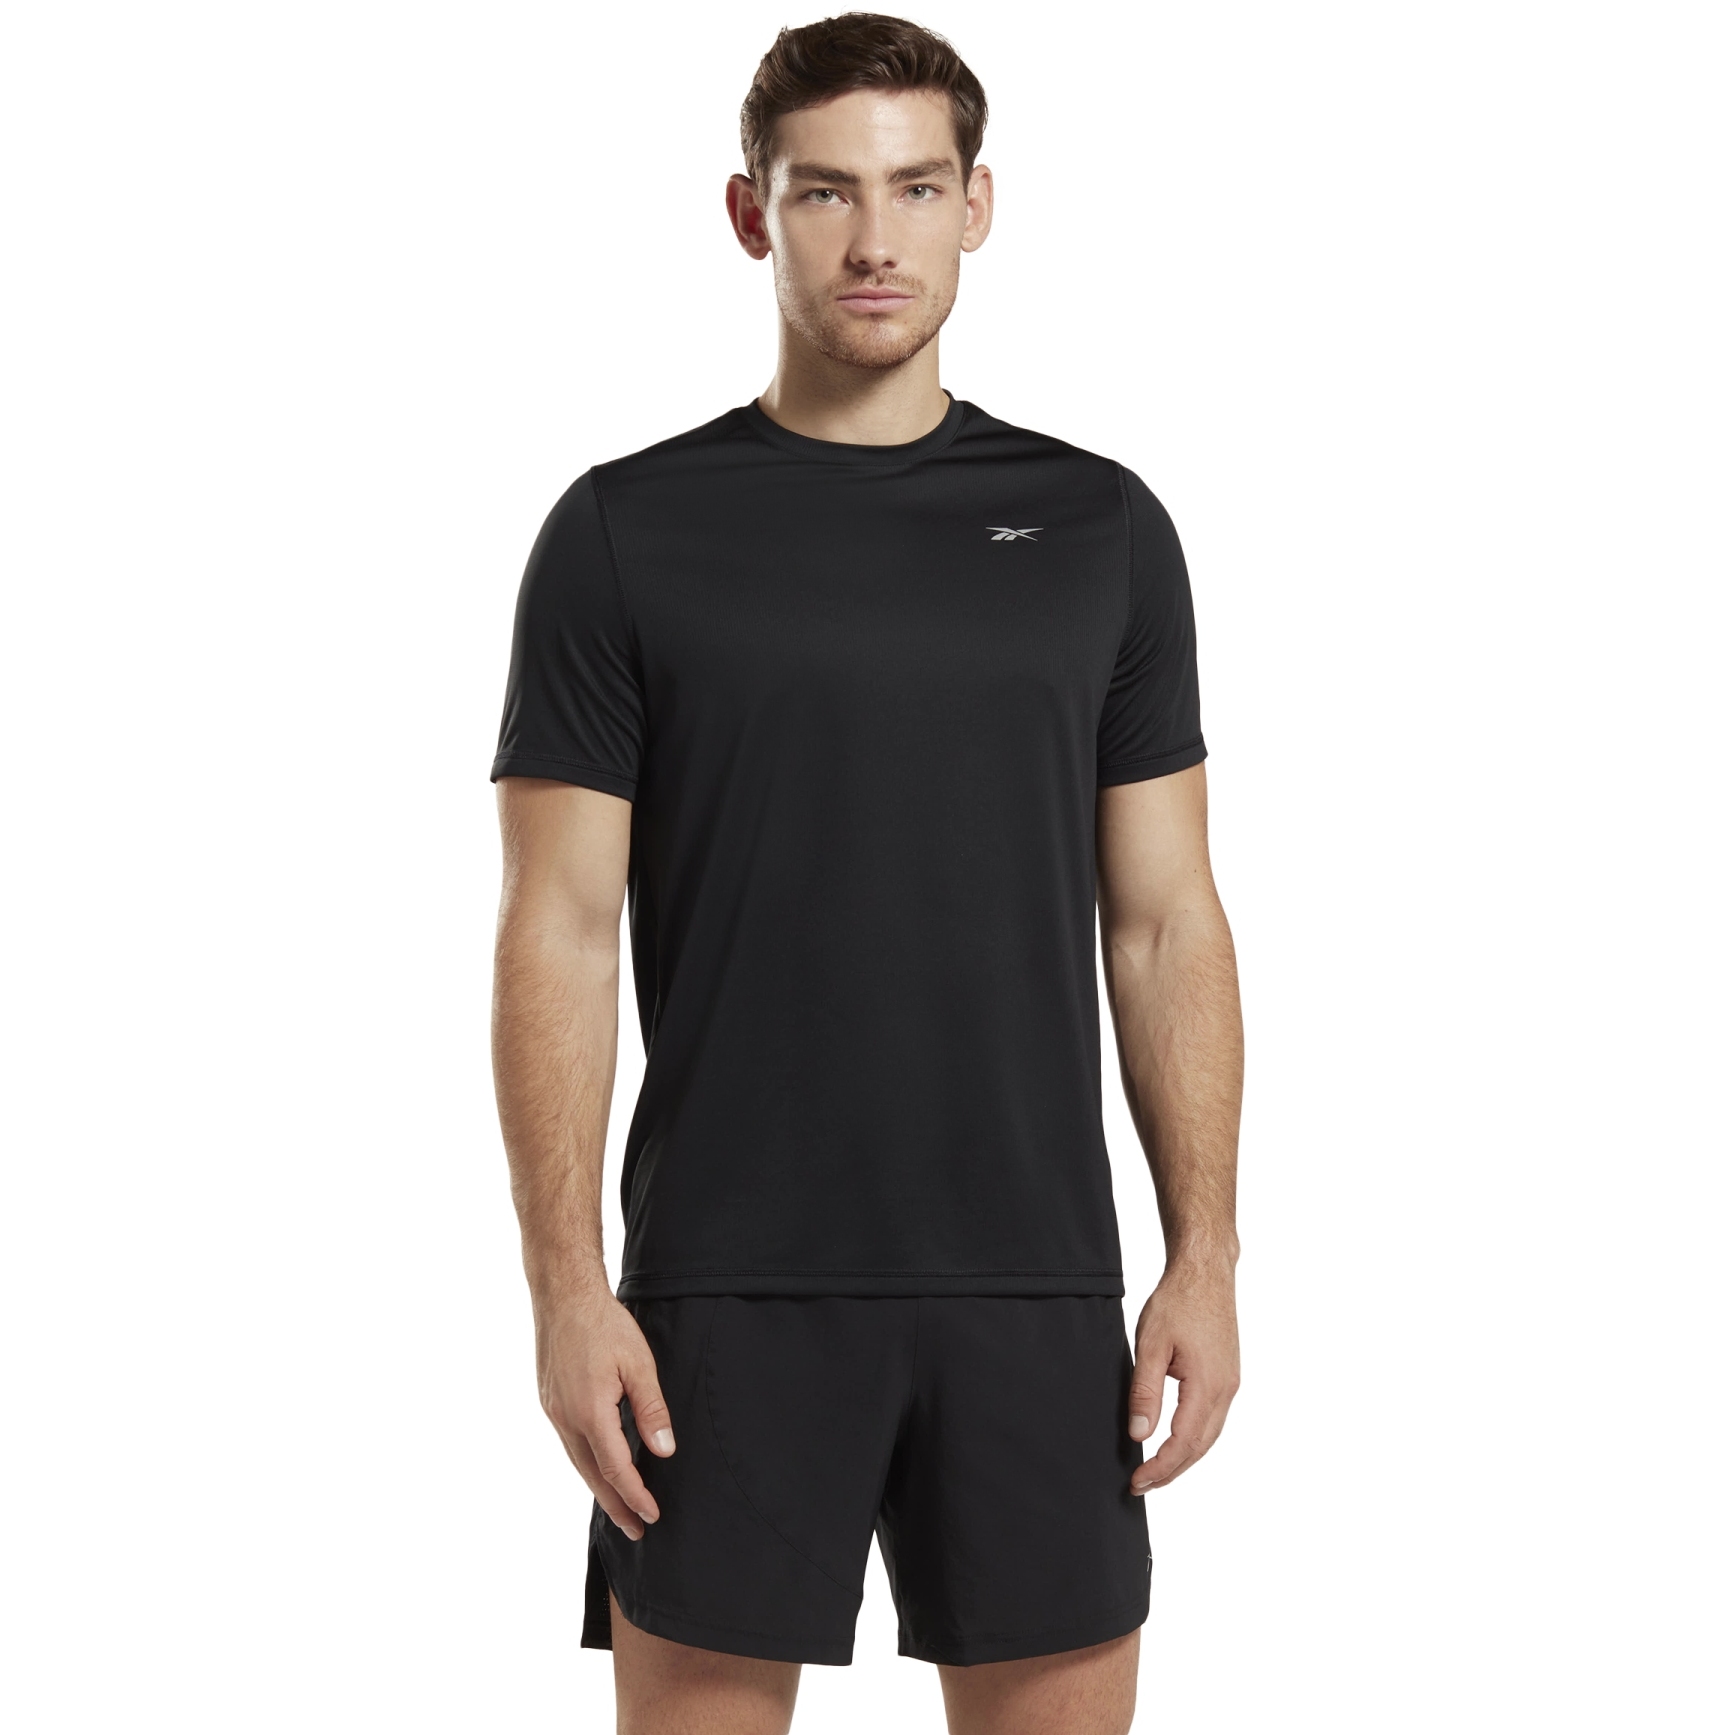 Produktbild von Reebok Running GFX T-Shirt Herren - schwarz